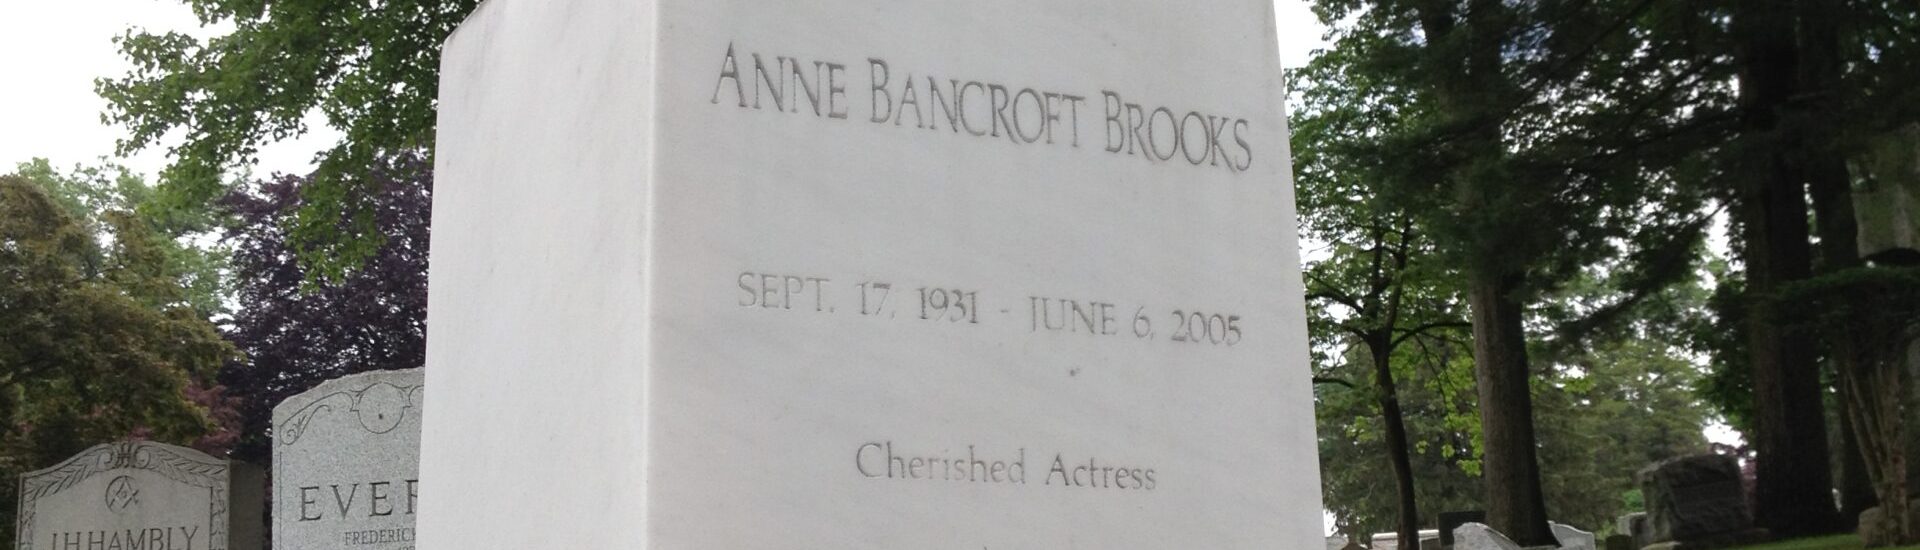 Anne Bancroft